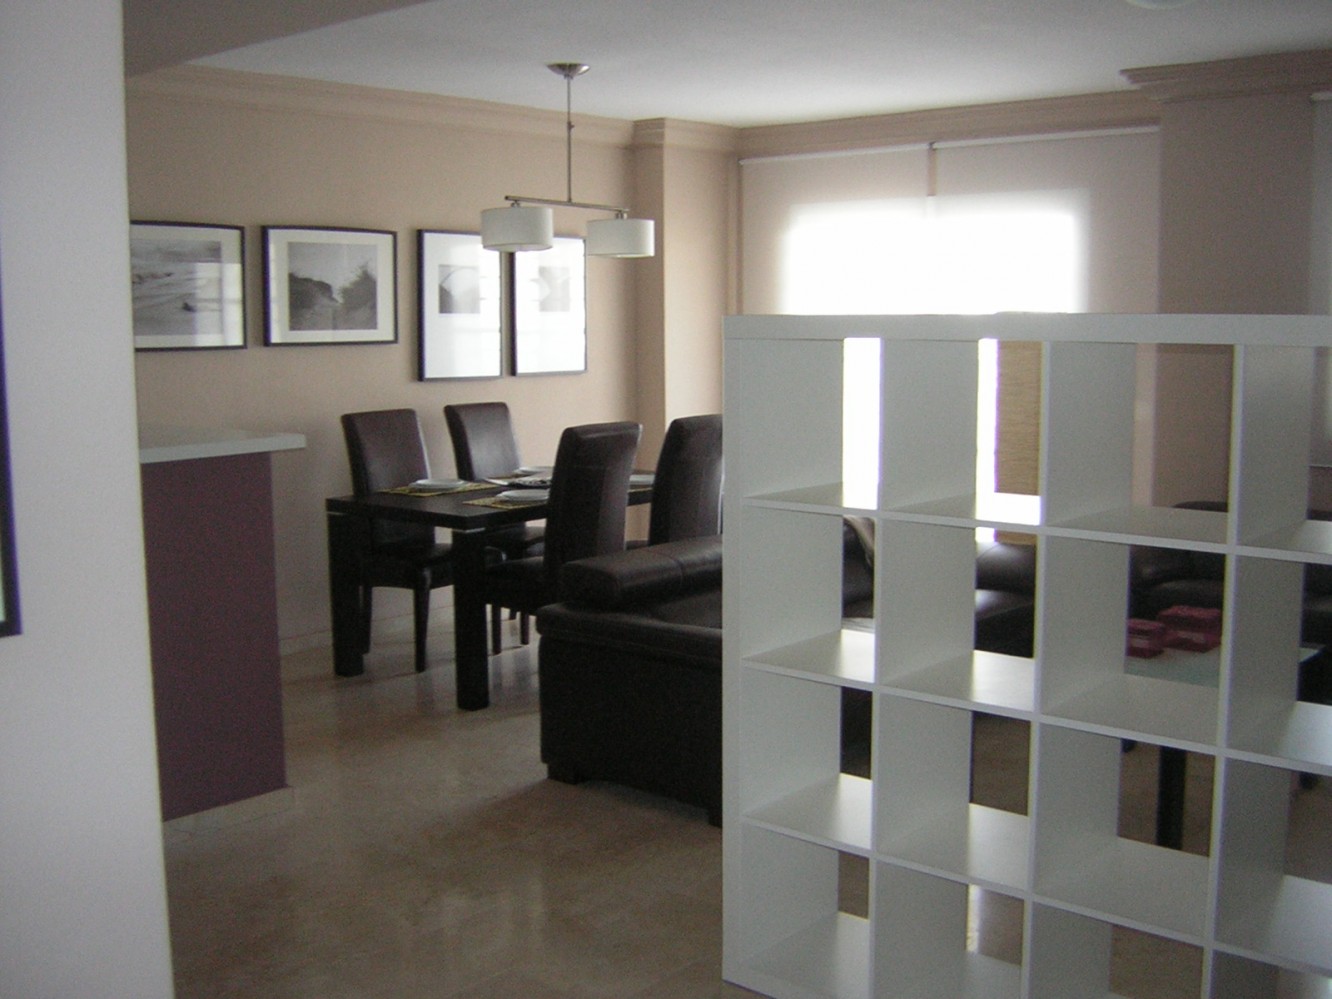 Apartamento en venta en Caleta de Vélez